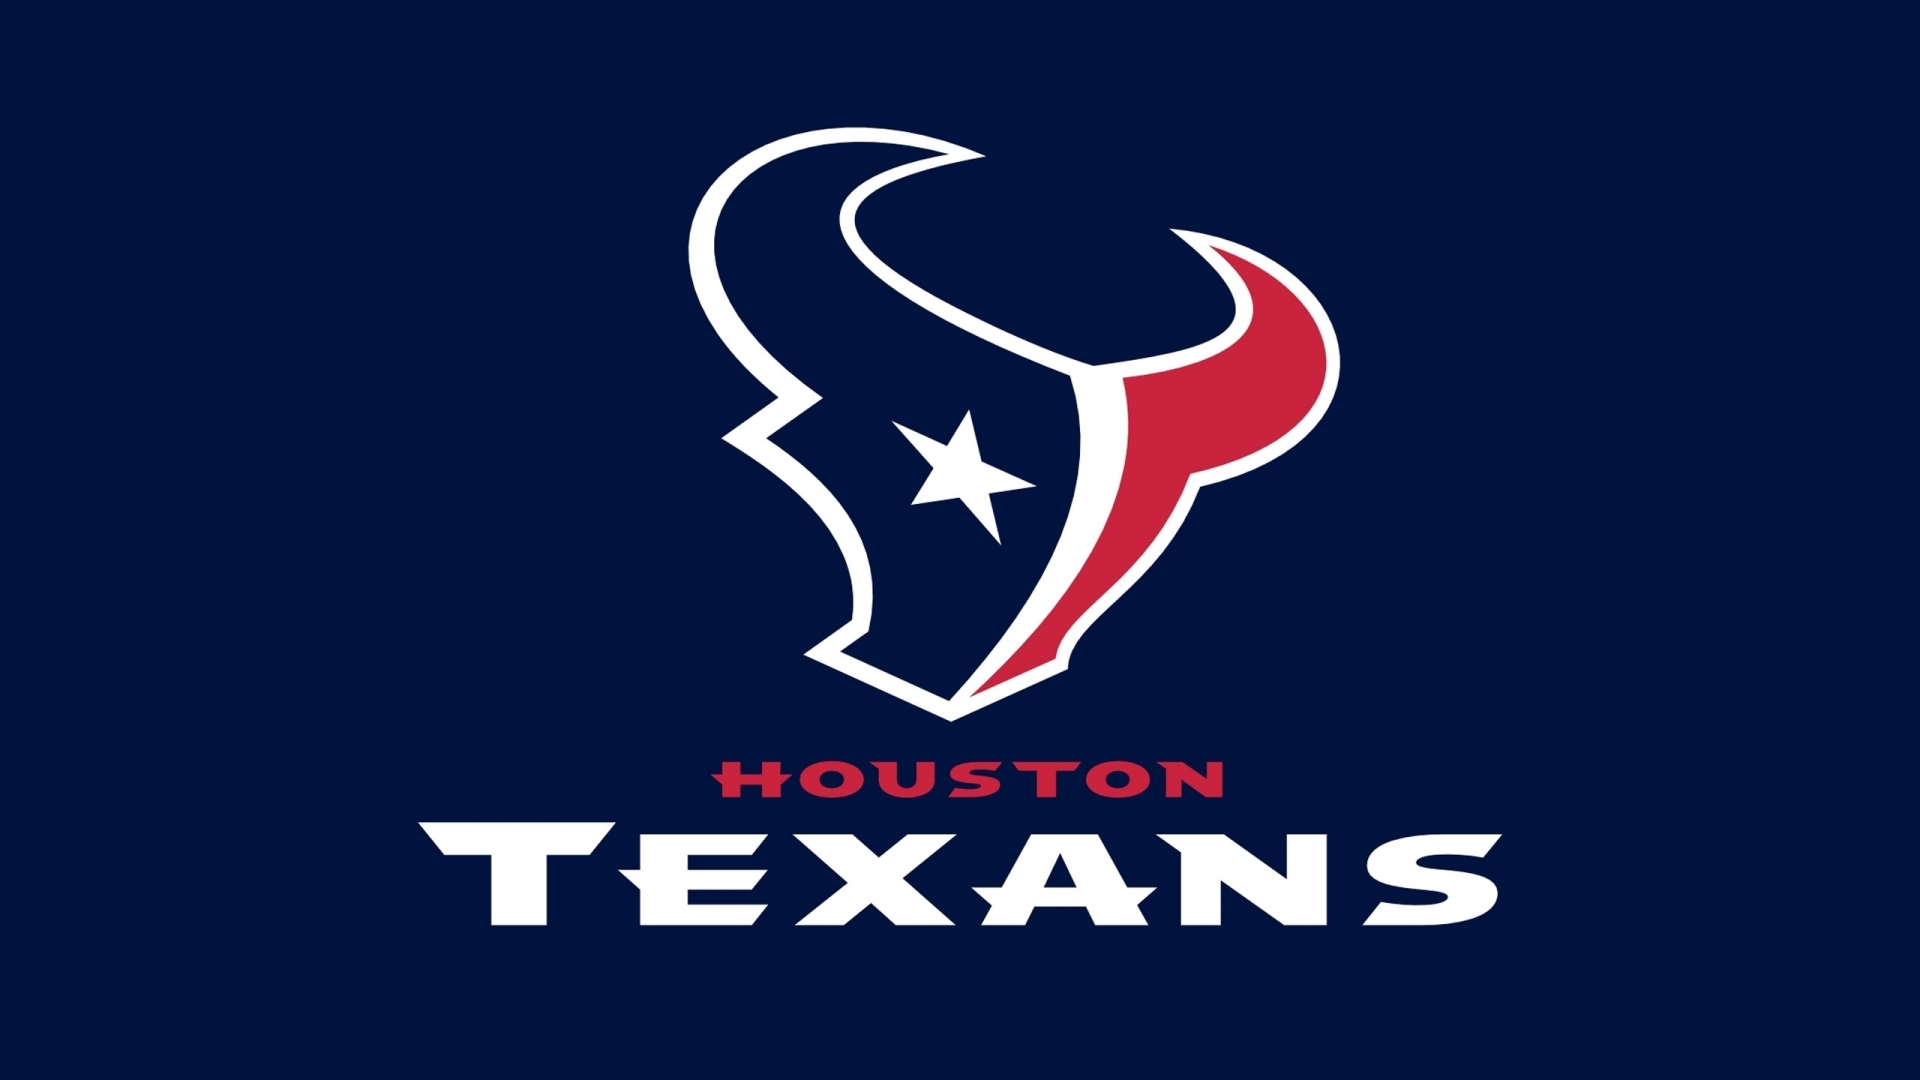 Houston Texans Logo for 1920 x 1080 HDTV 1080p resolution